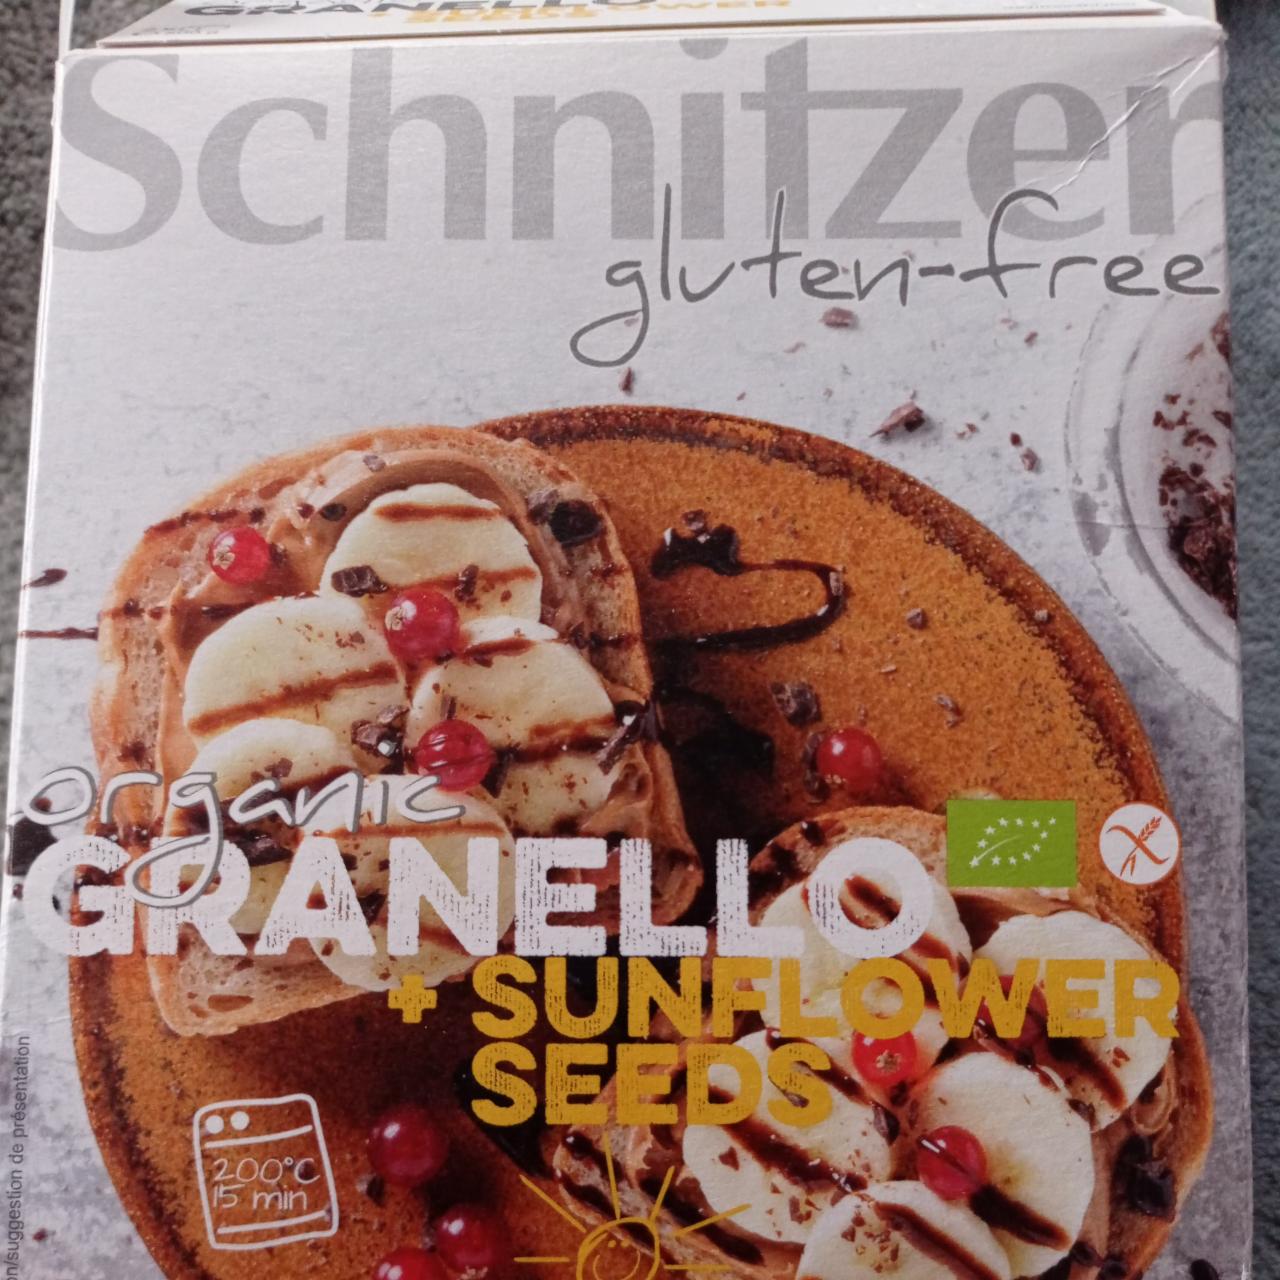 Fotografie - Organic Granello + sunflower seeds Schnitzer